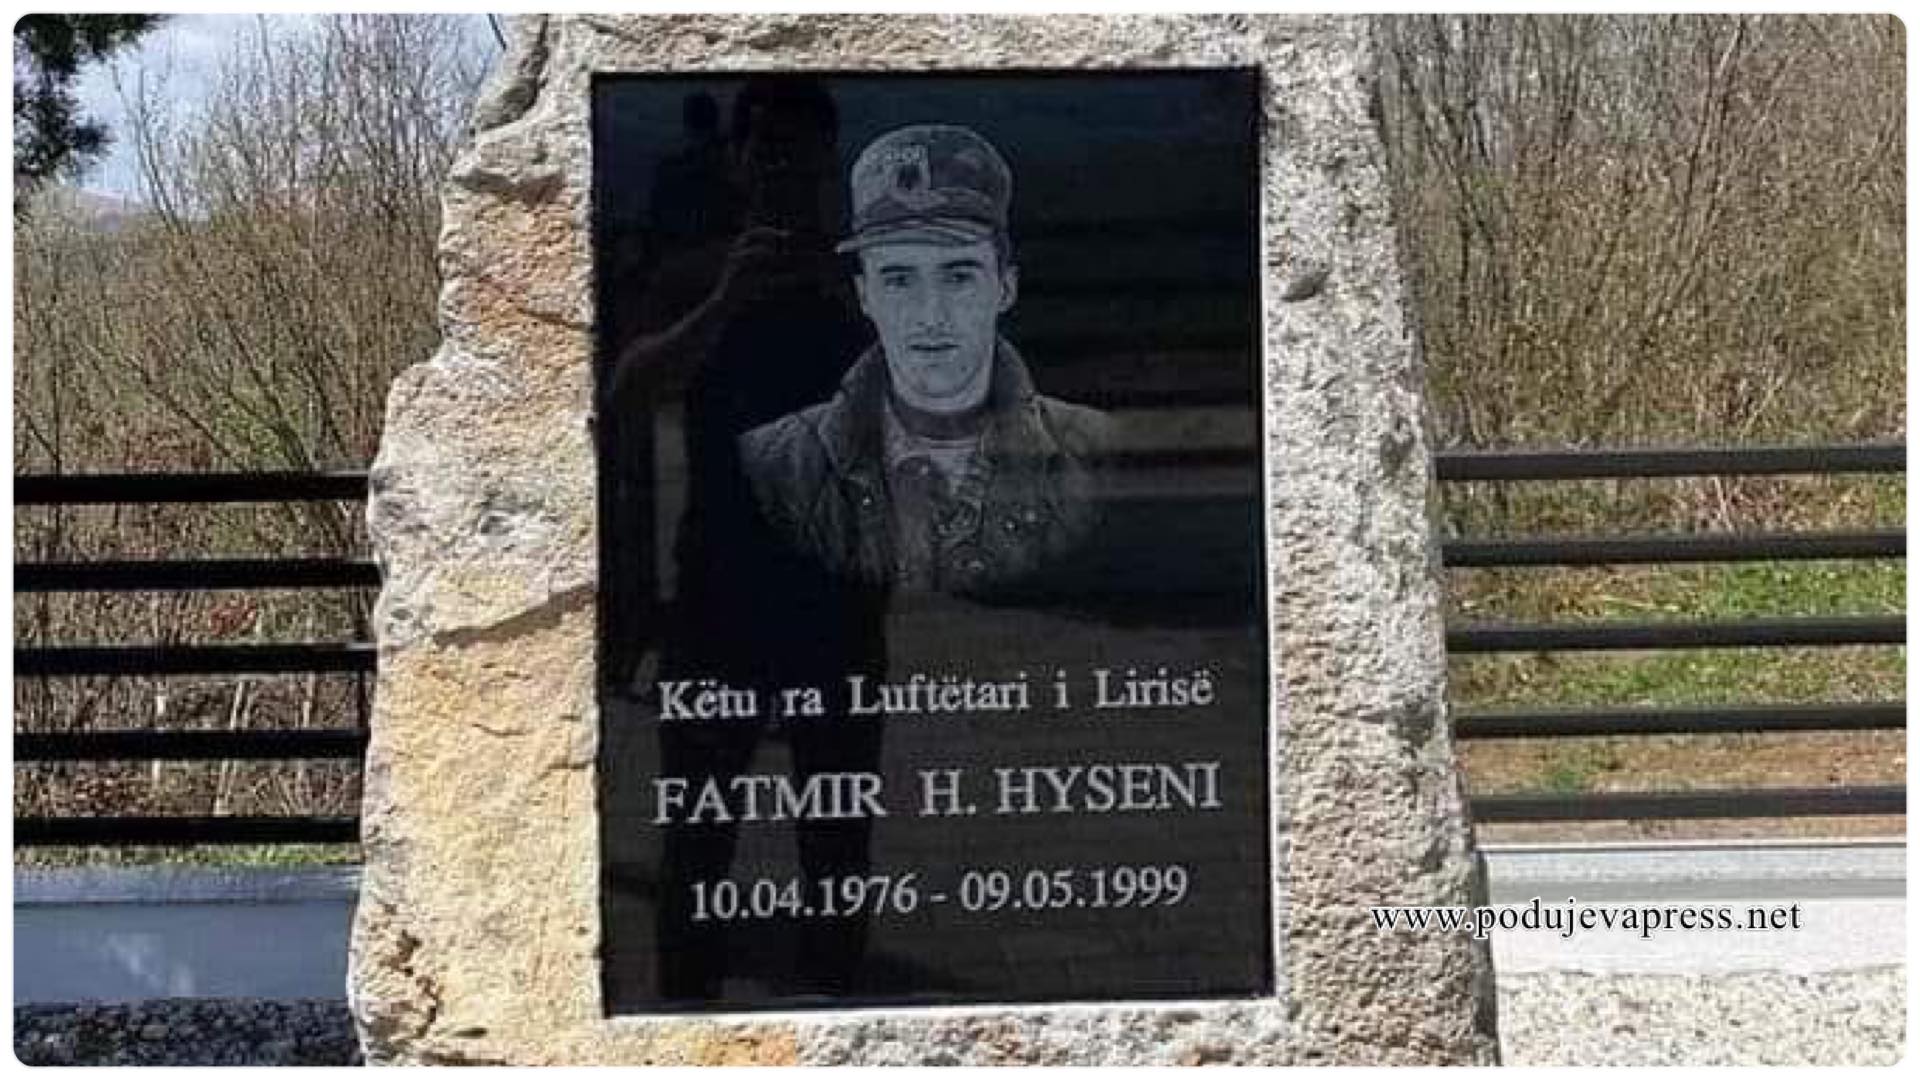  Homazhe në 24 vjetorin e rënies së heroit Fatmir Hyseni